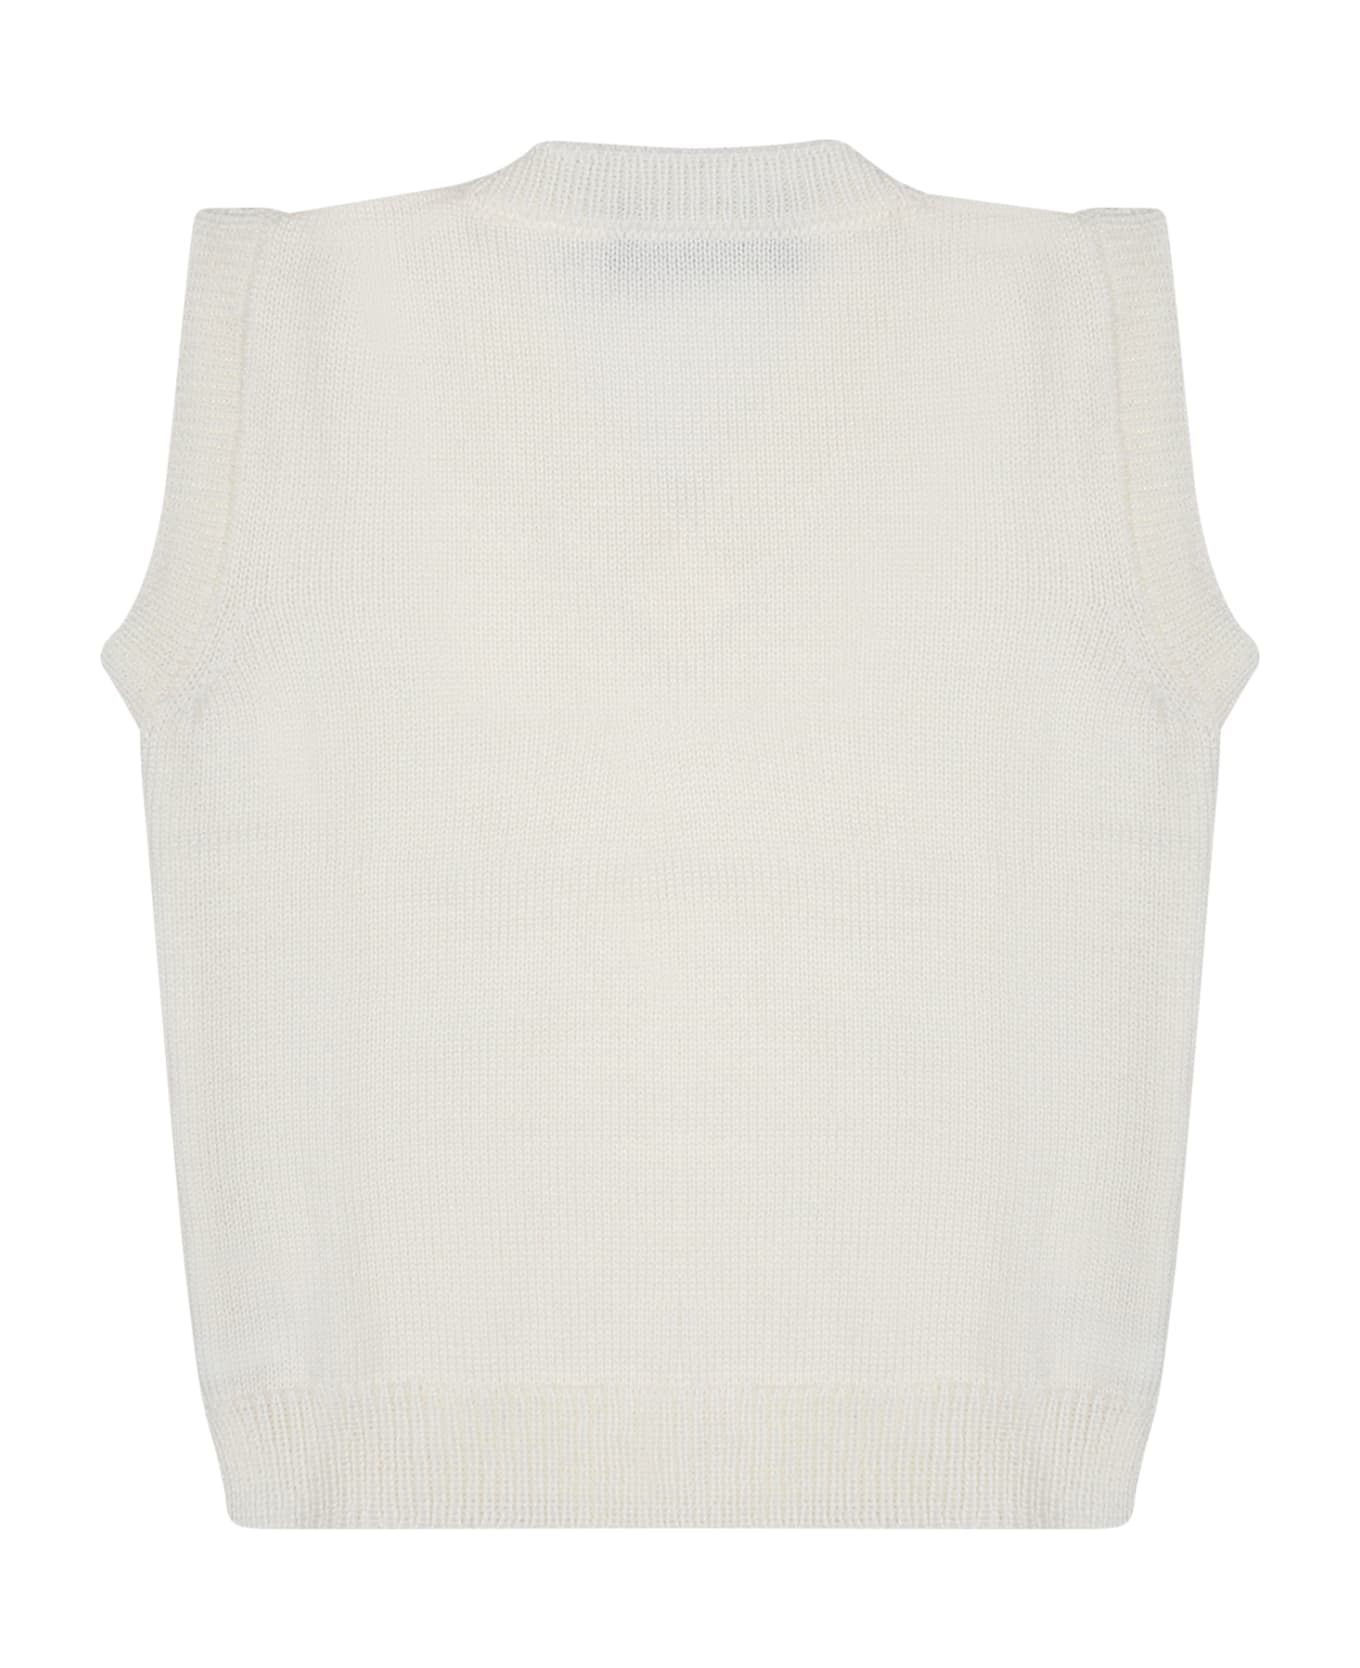 Little Bear White Vest Sweater For Baby Boy - White ニットウェア＆スウェットシャツ